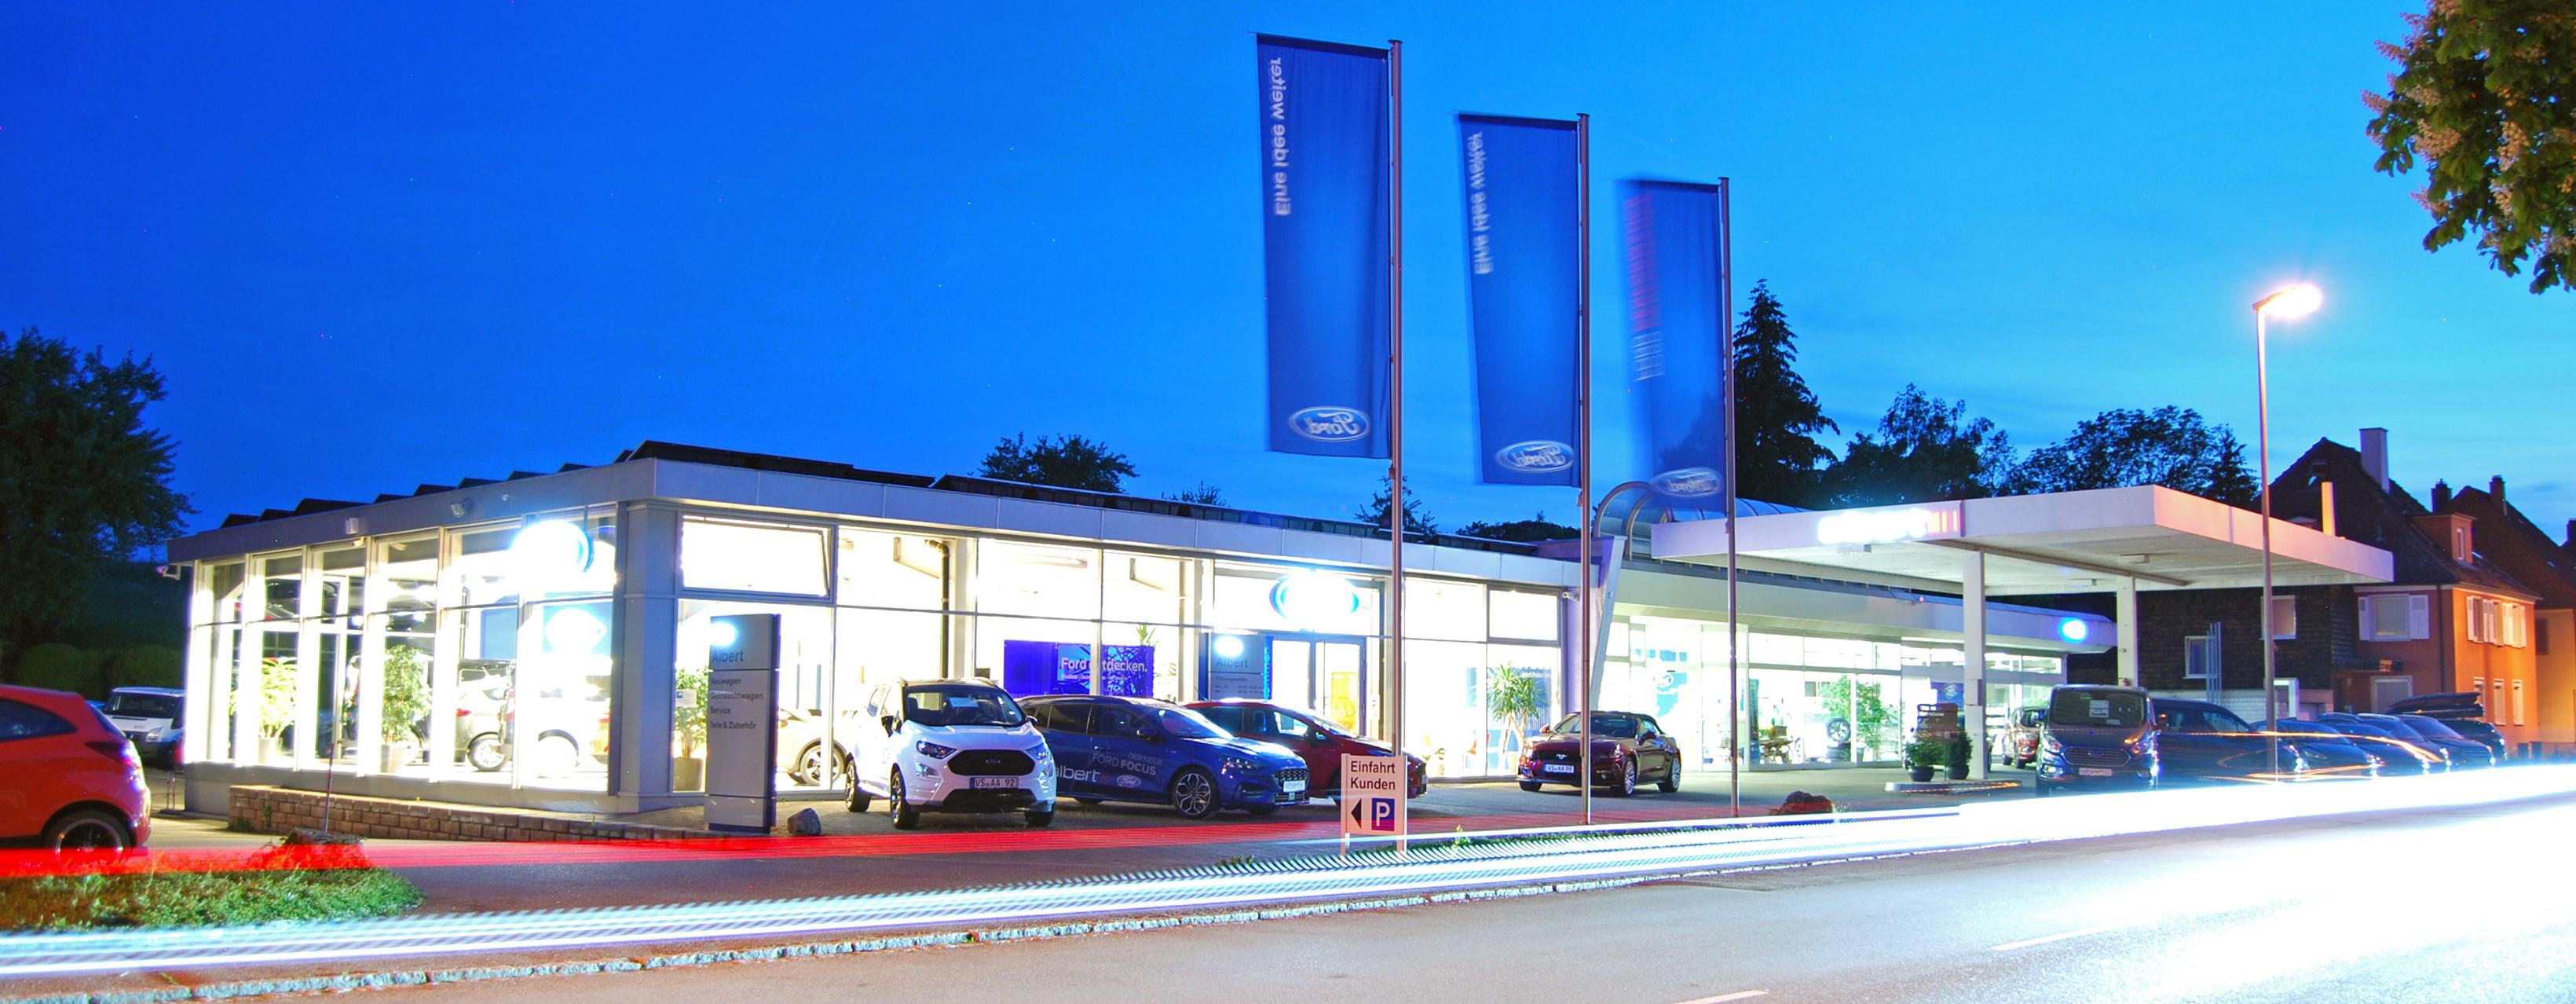 Bild 1 Autohaus Albert GmbH in Hüfingen